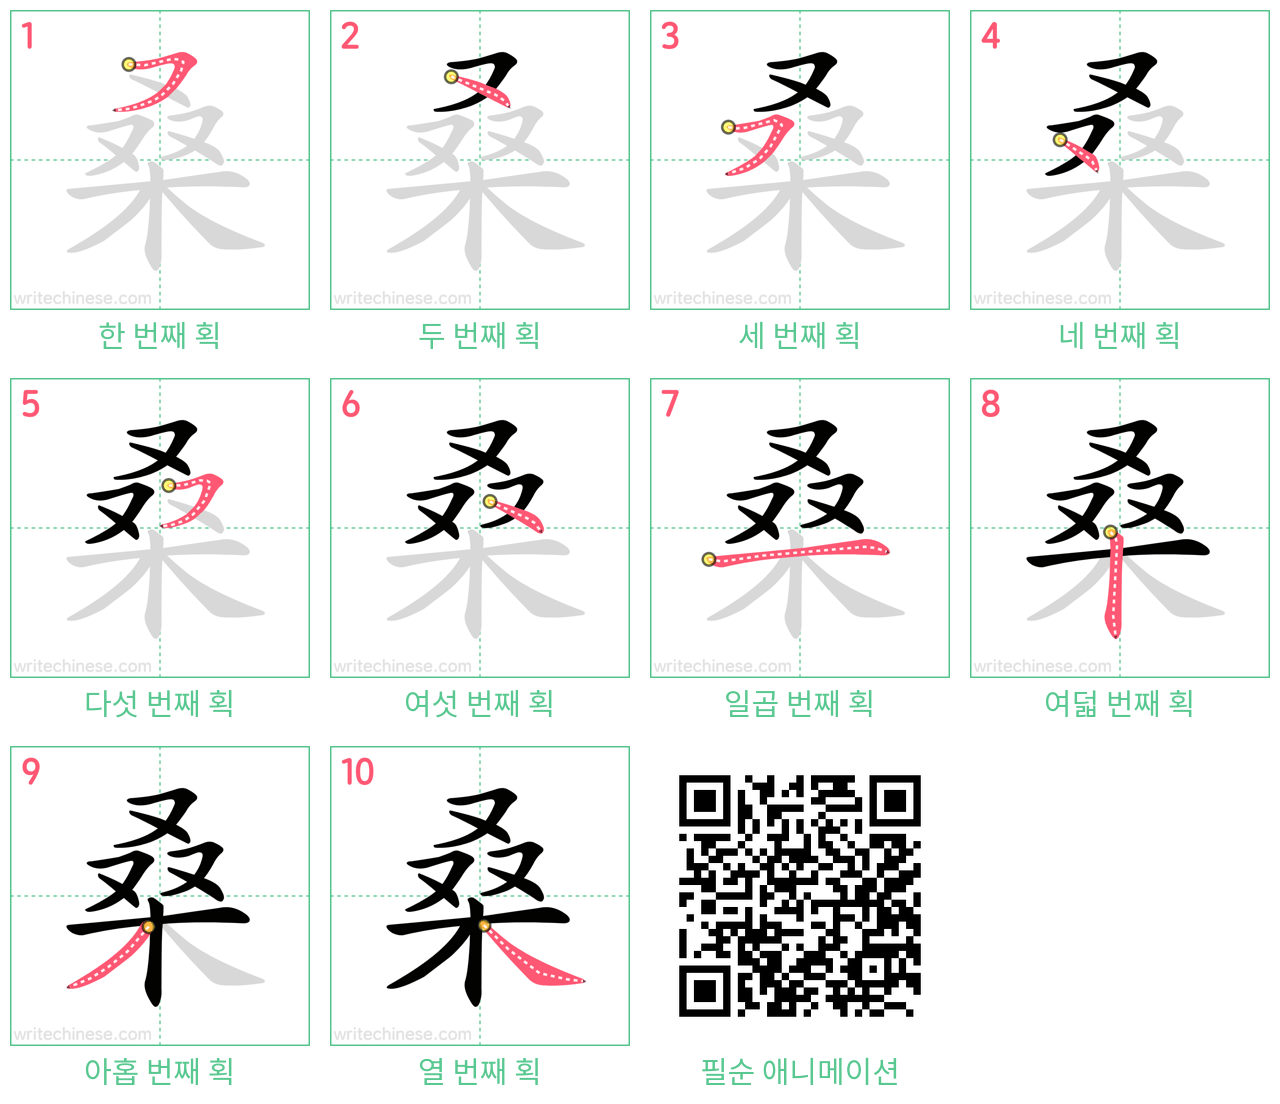 桑 step-by-step stroke order diagrams